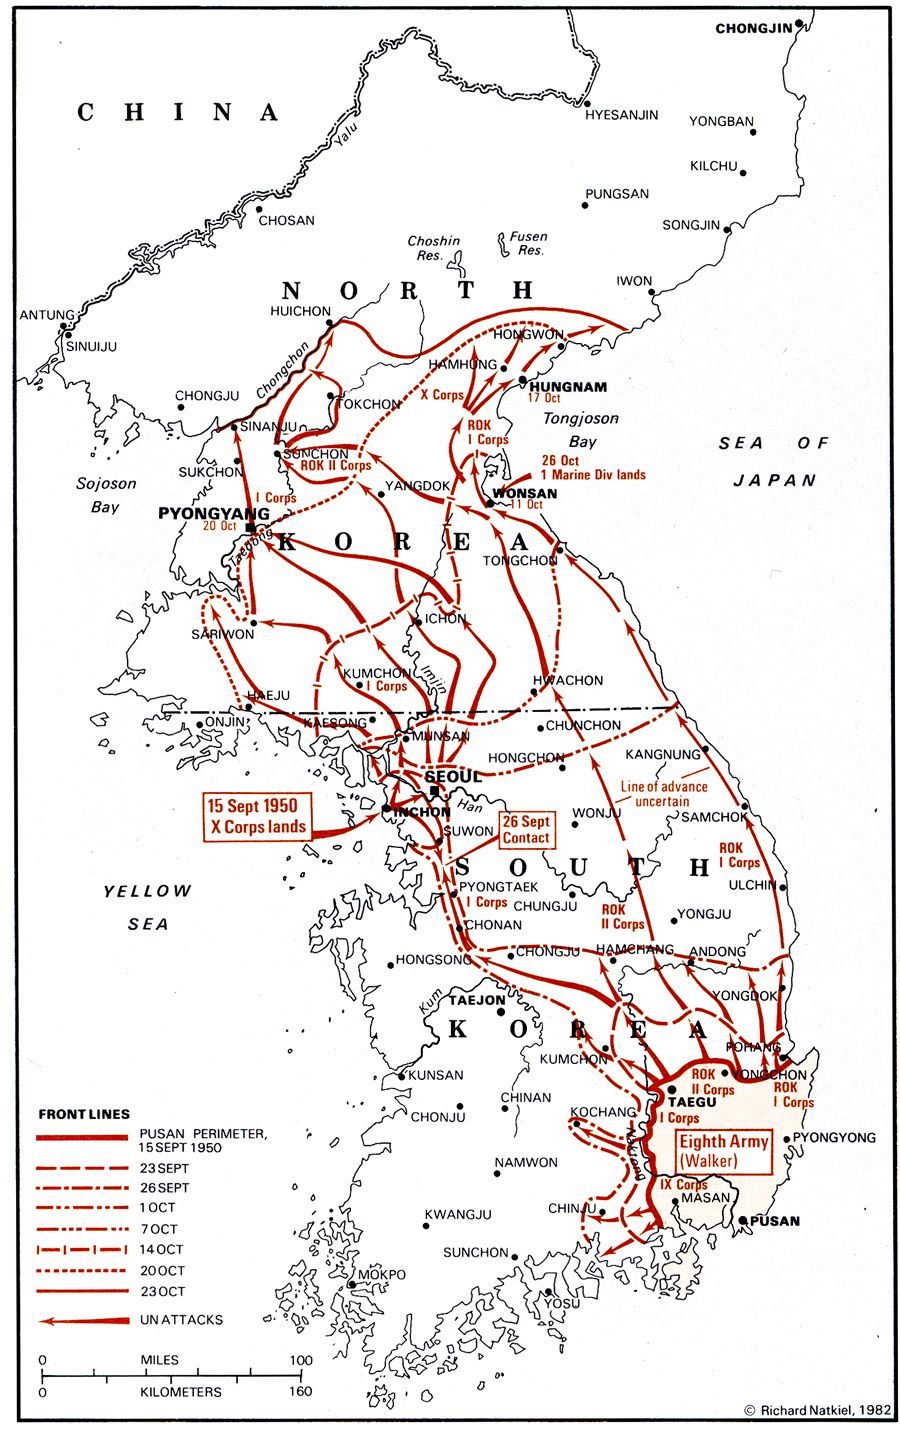 An Overview of the Korean War